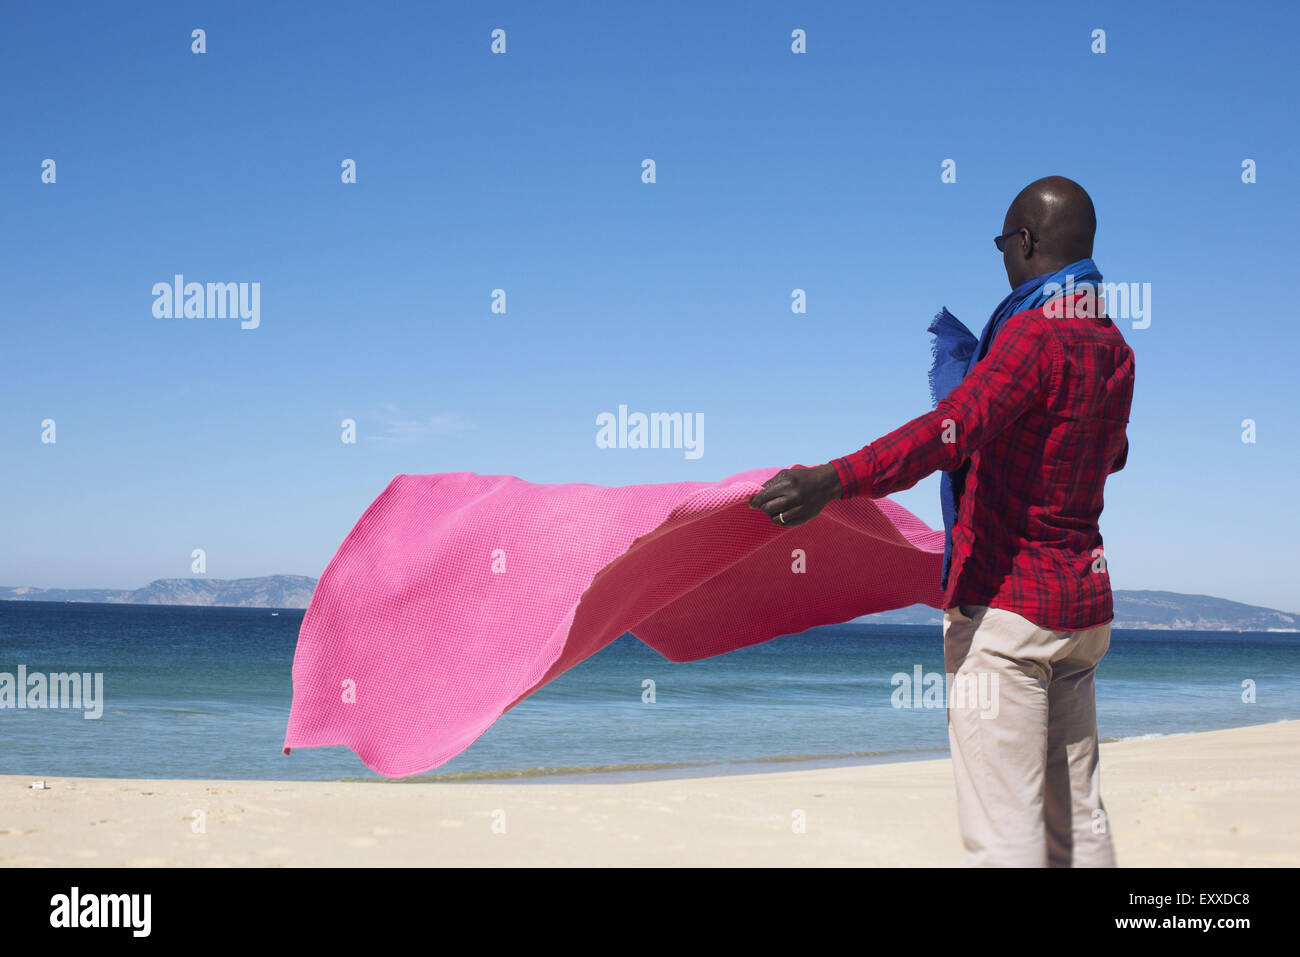 El hombre en la playa, sujetando una manta en la brisa Foto de stock